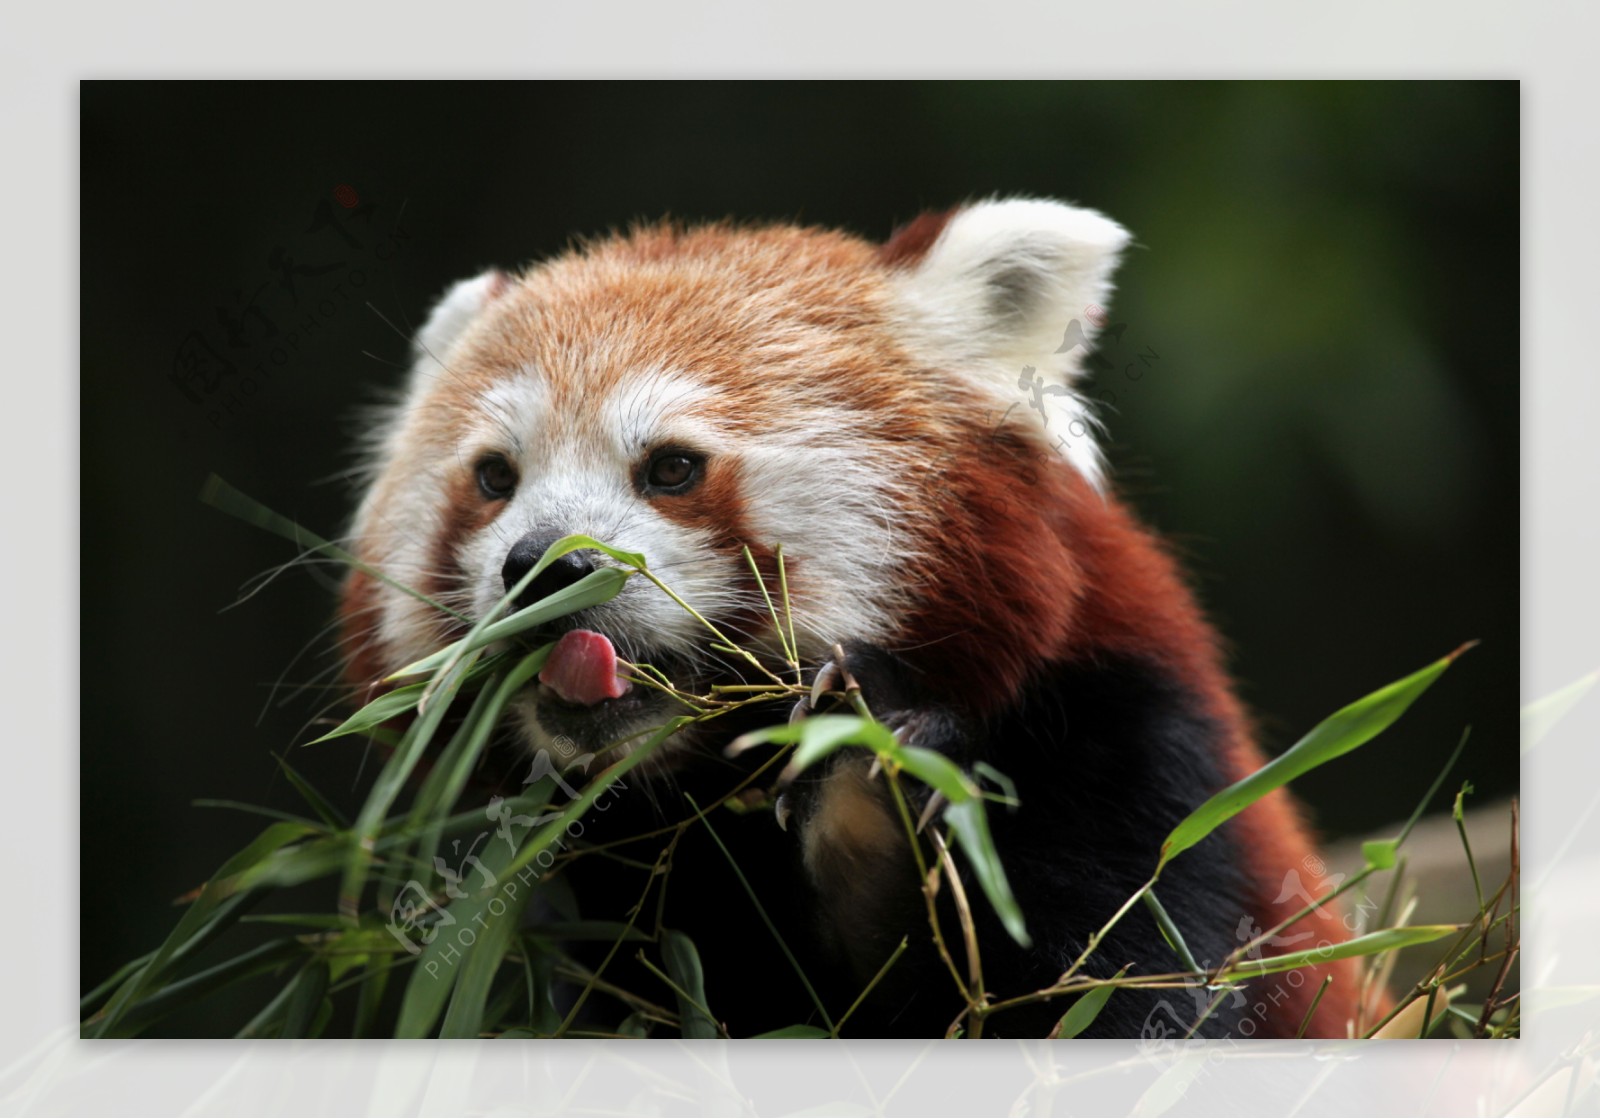 吃竹子的小熊猫图片